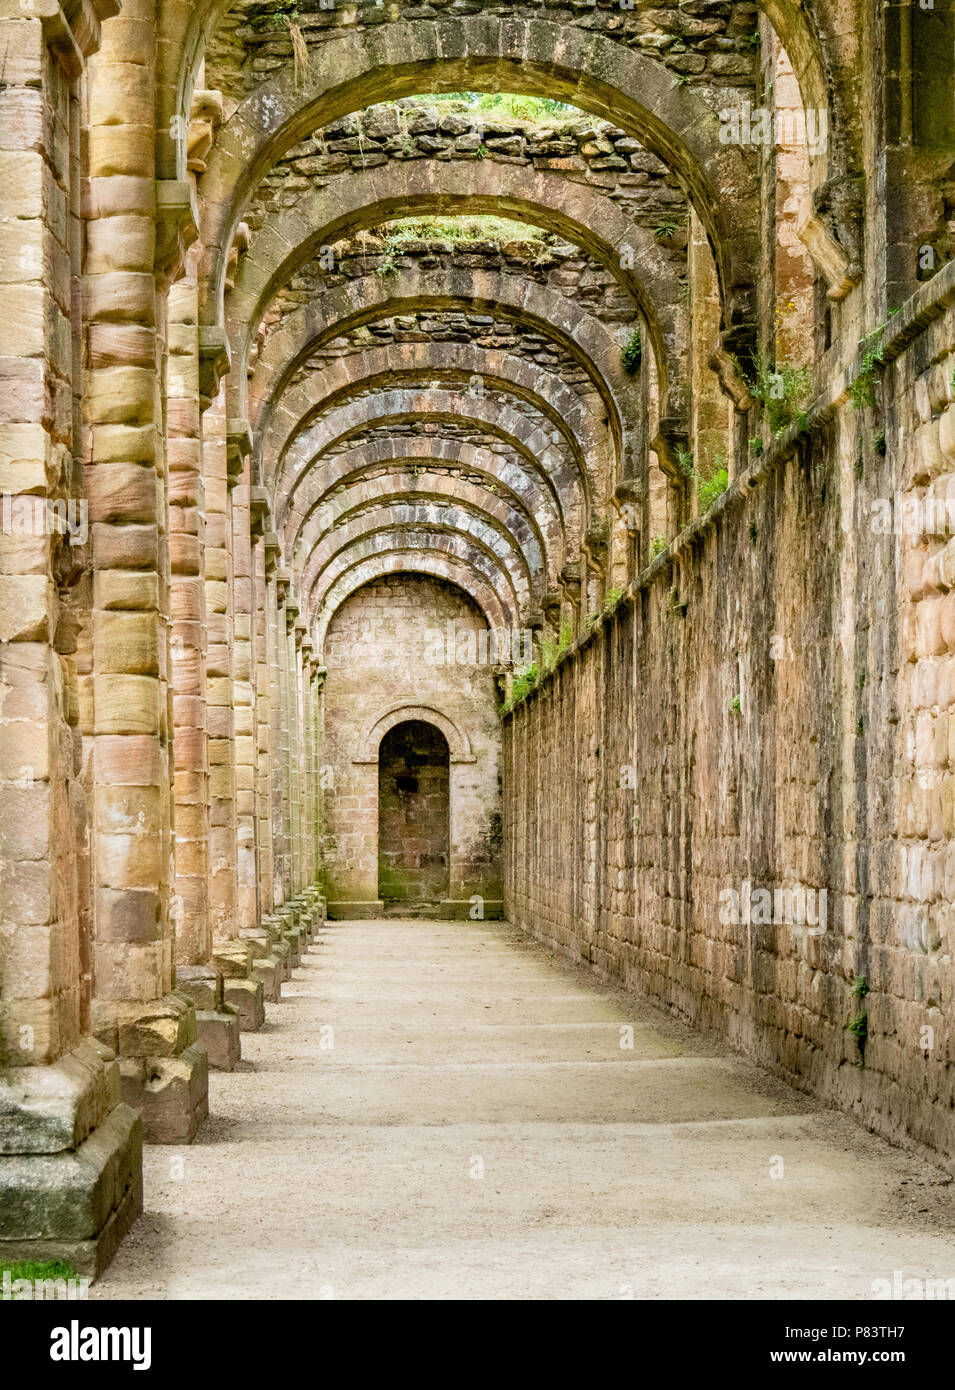 Edificio arco románico en ruinas de Fountains Abbey cerca de Ripon, en Yorkshire, Reino Unido Foto de stock